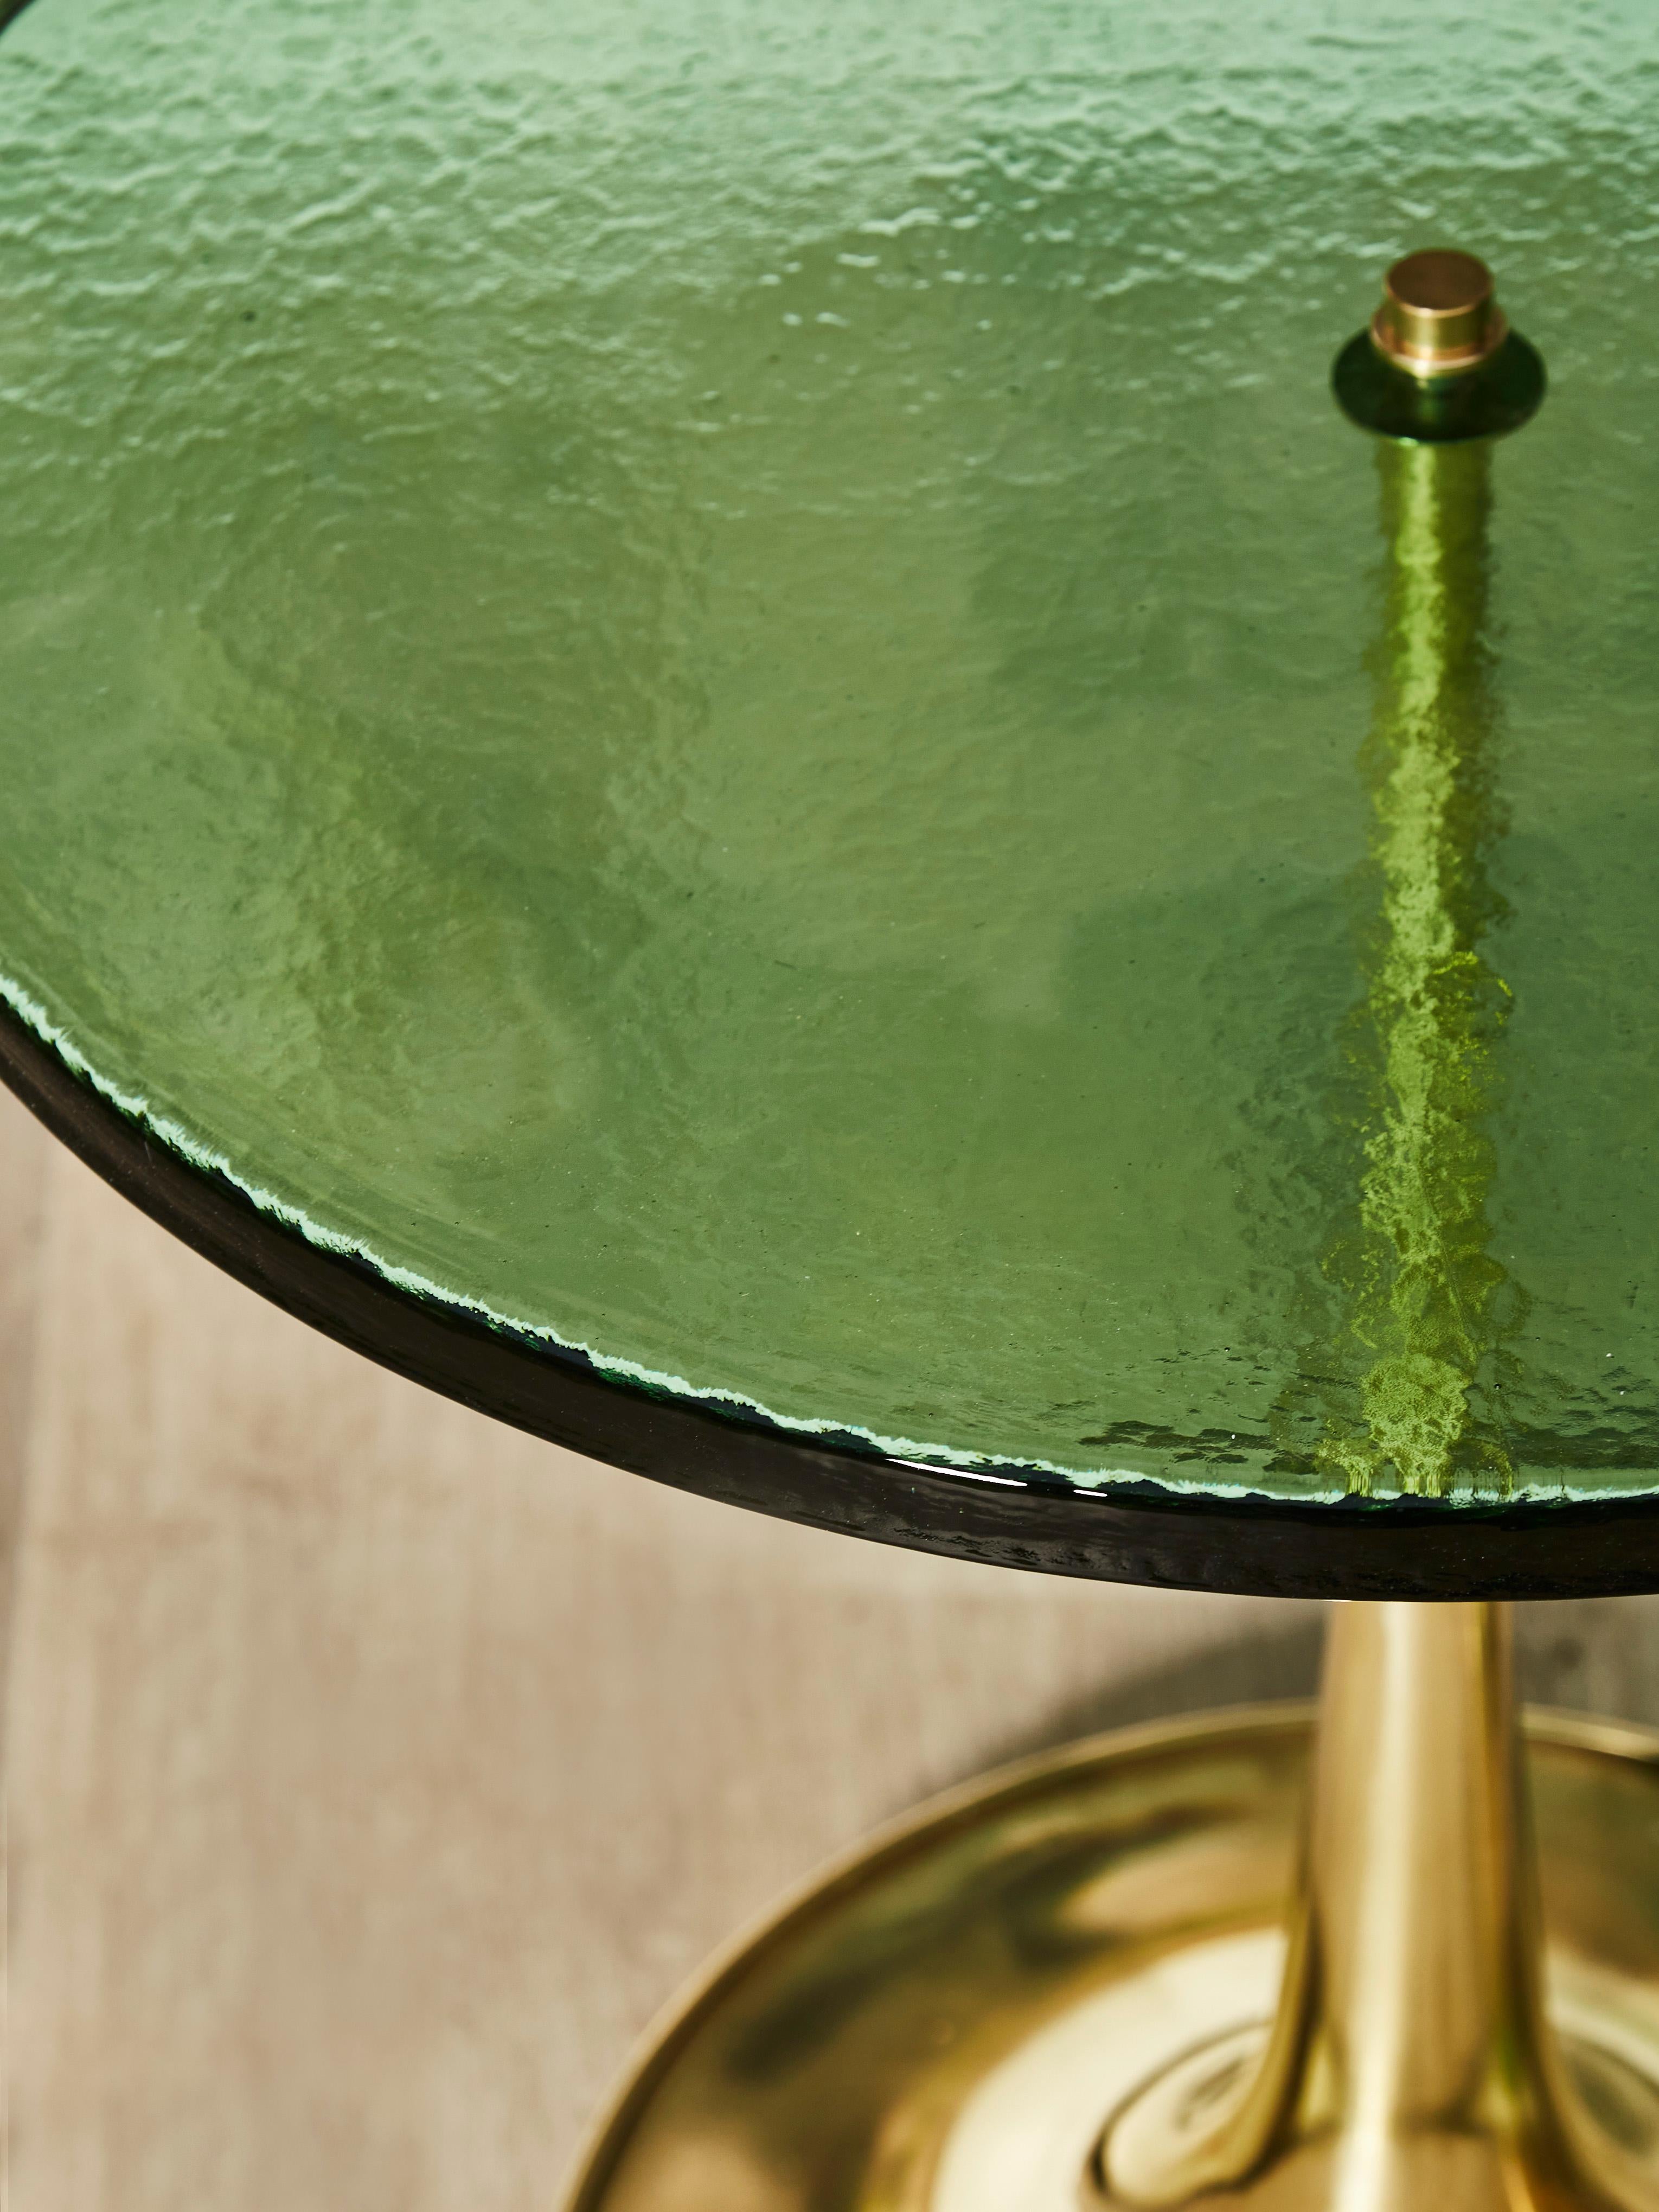 Elegante paire de piédestaux en laiton avec plateaux en verre de Murano teinté.
Création par le Studio Glustin.
Mesures : ø 60 x H 62 cm / ø 40 x H 52 cm.